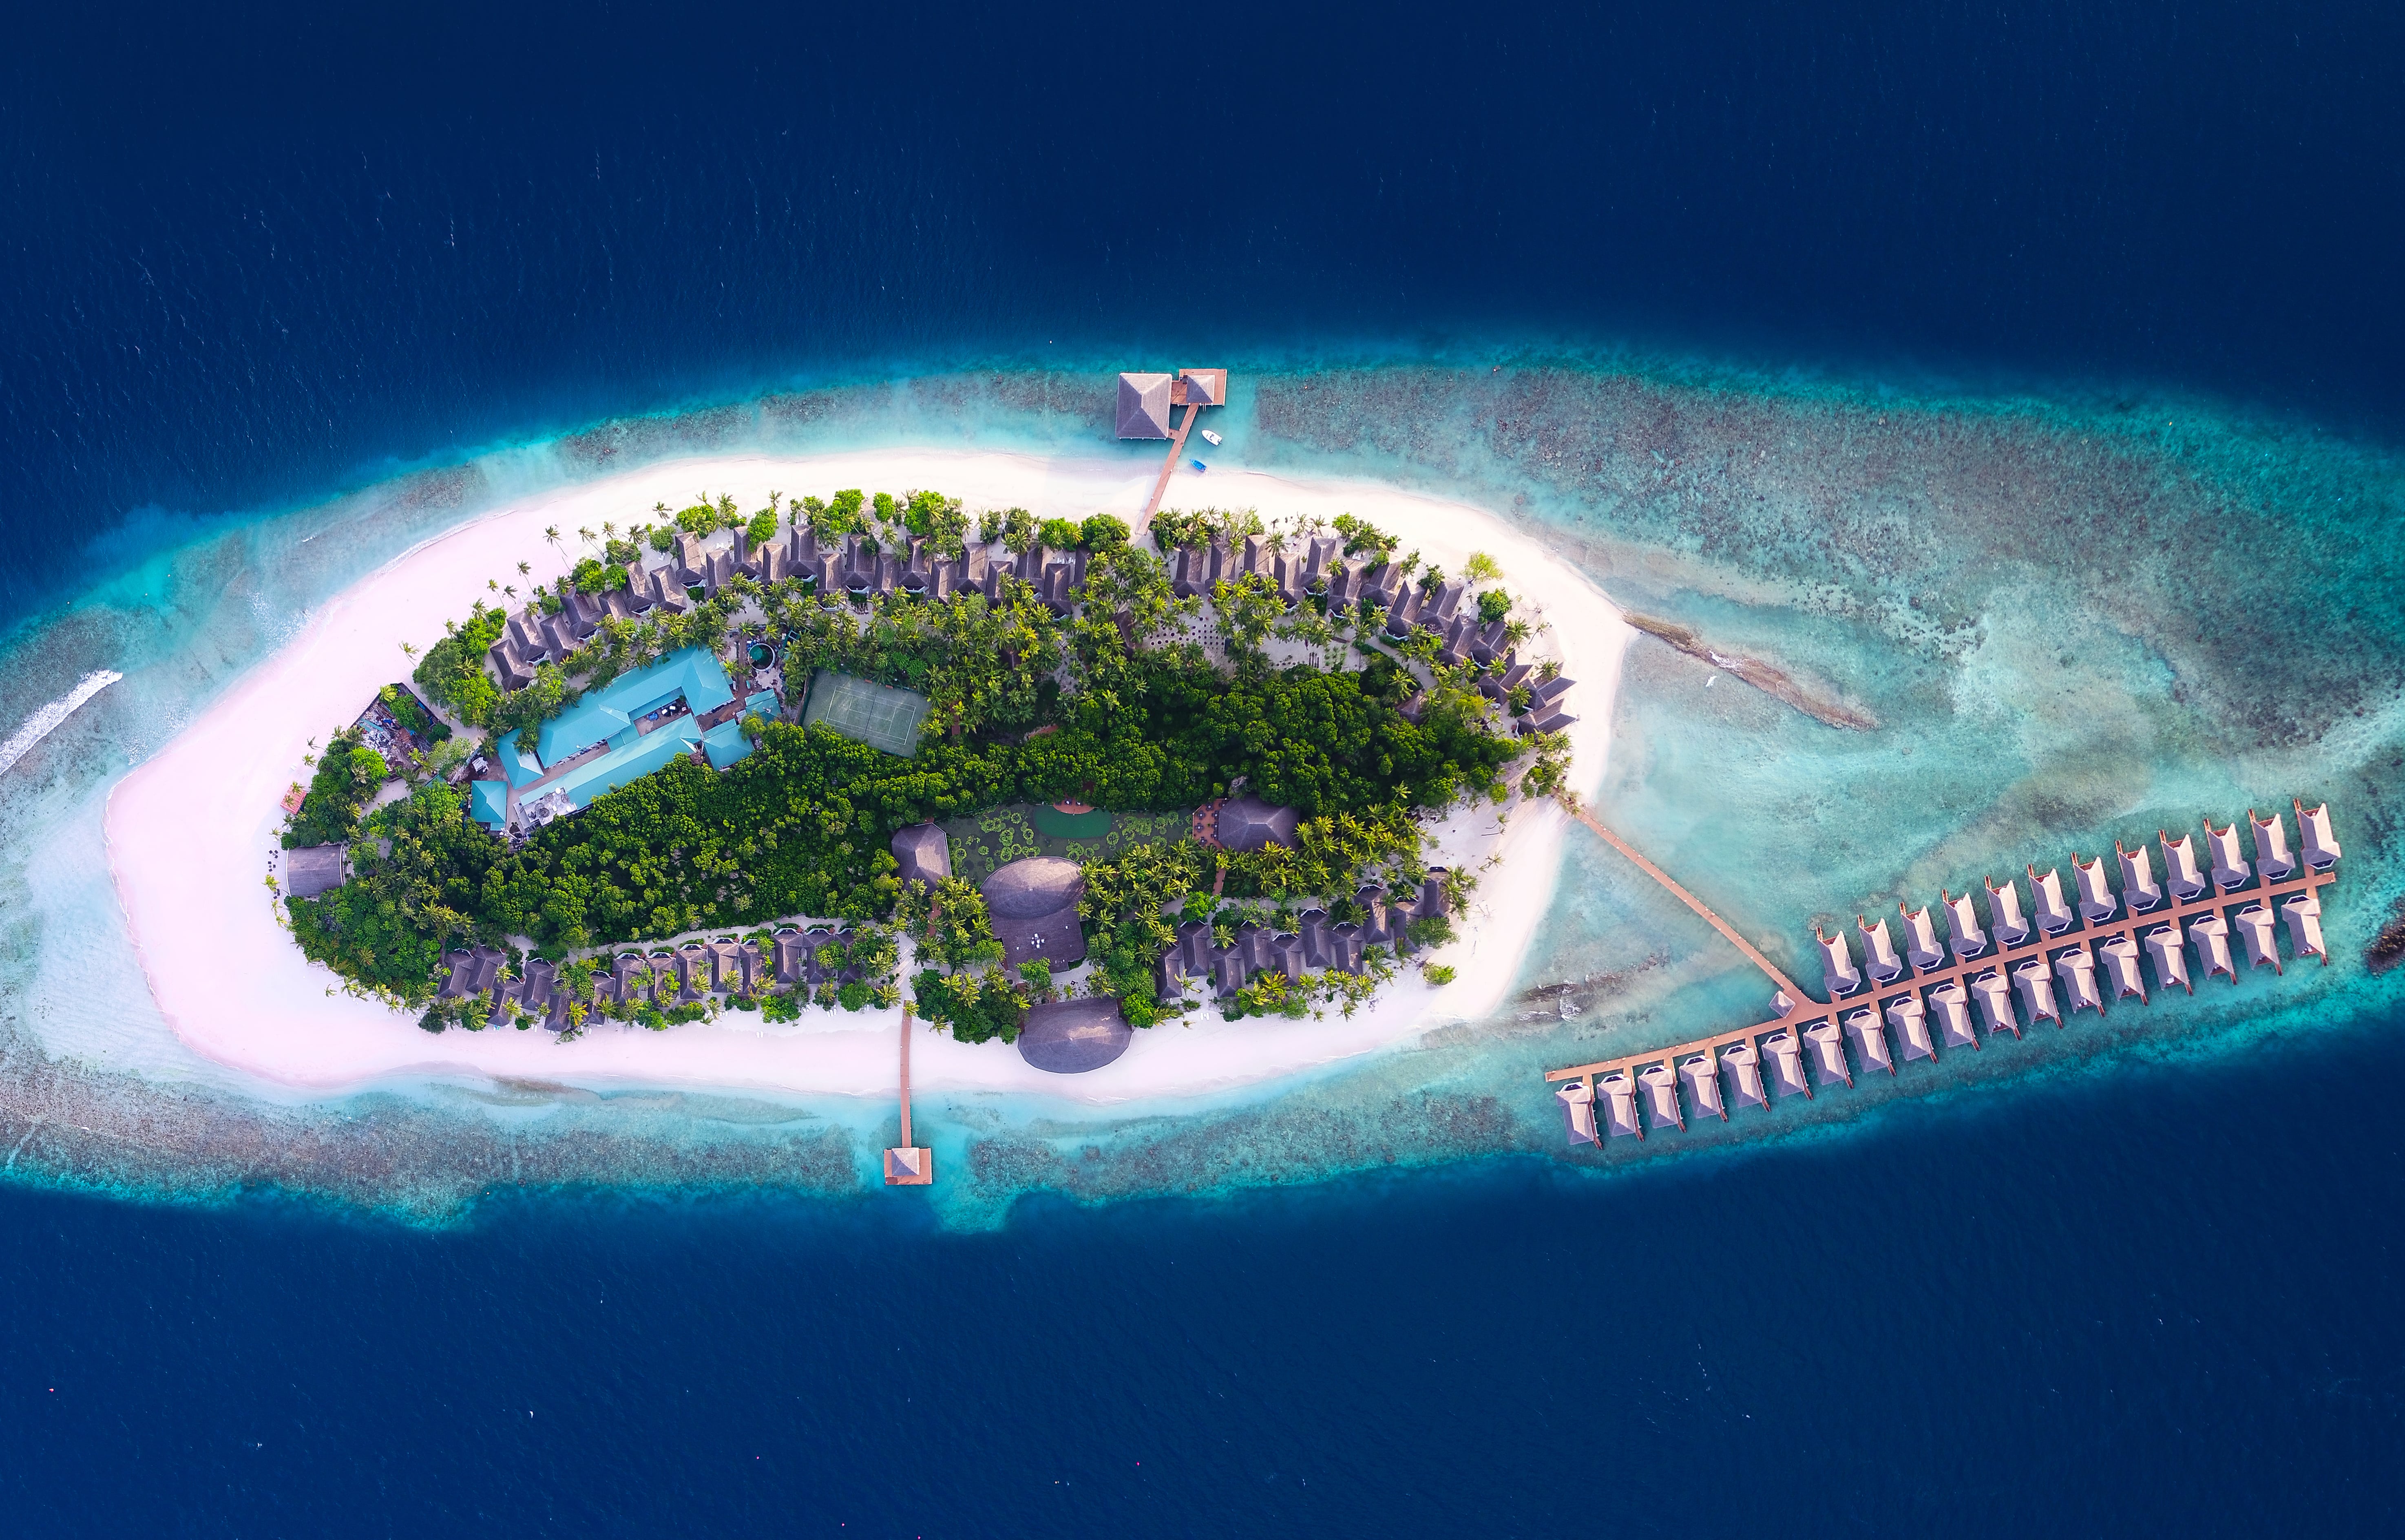 Dreamland unique. Отель Dreamland the unique Sea & Lake Resort & Spa 4*. Мальдивы,Баа Атолл,Dreamland the unique Sea. Остров Баа Атолл. Мальдивы остров Баа Атолл.